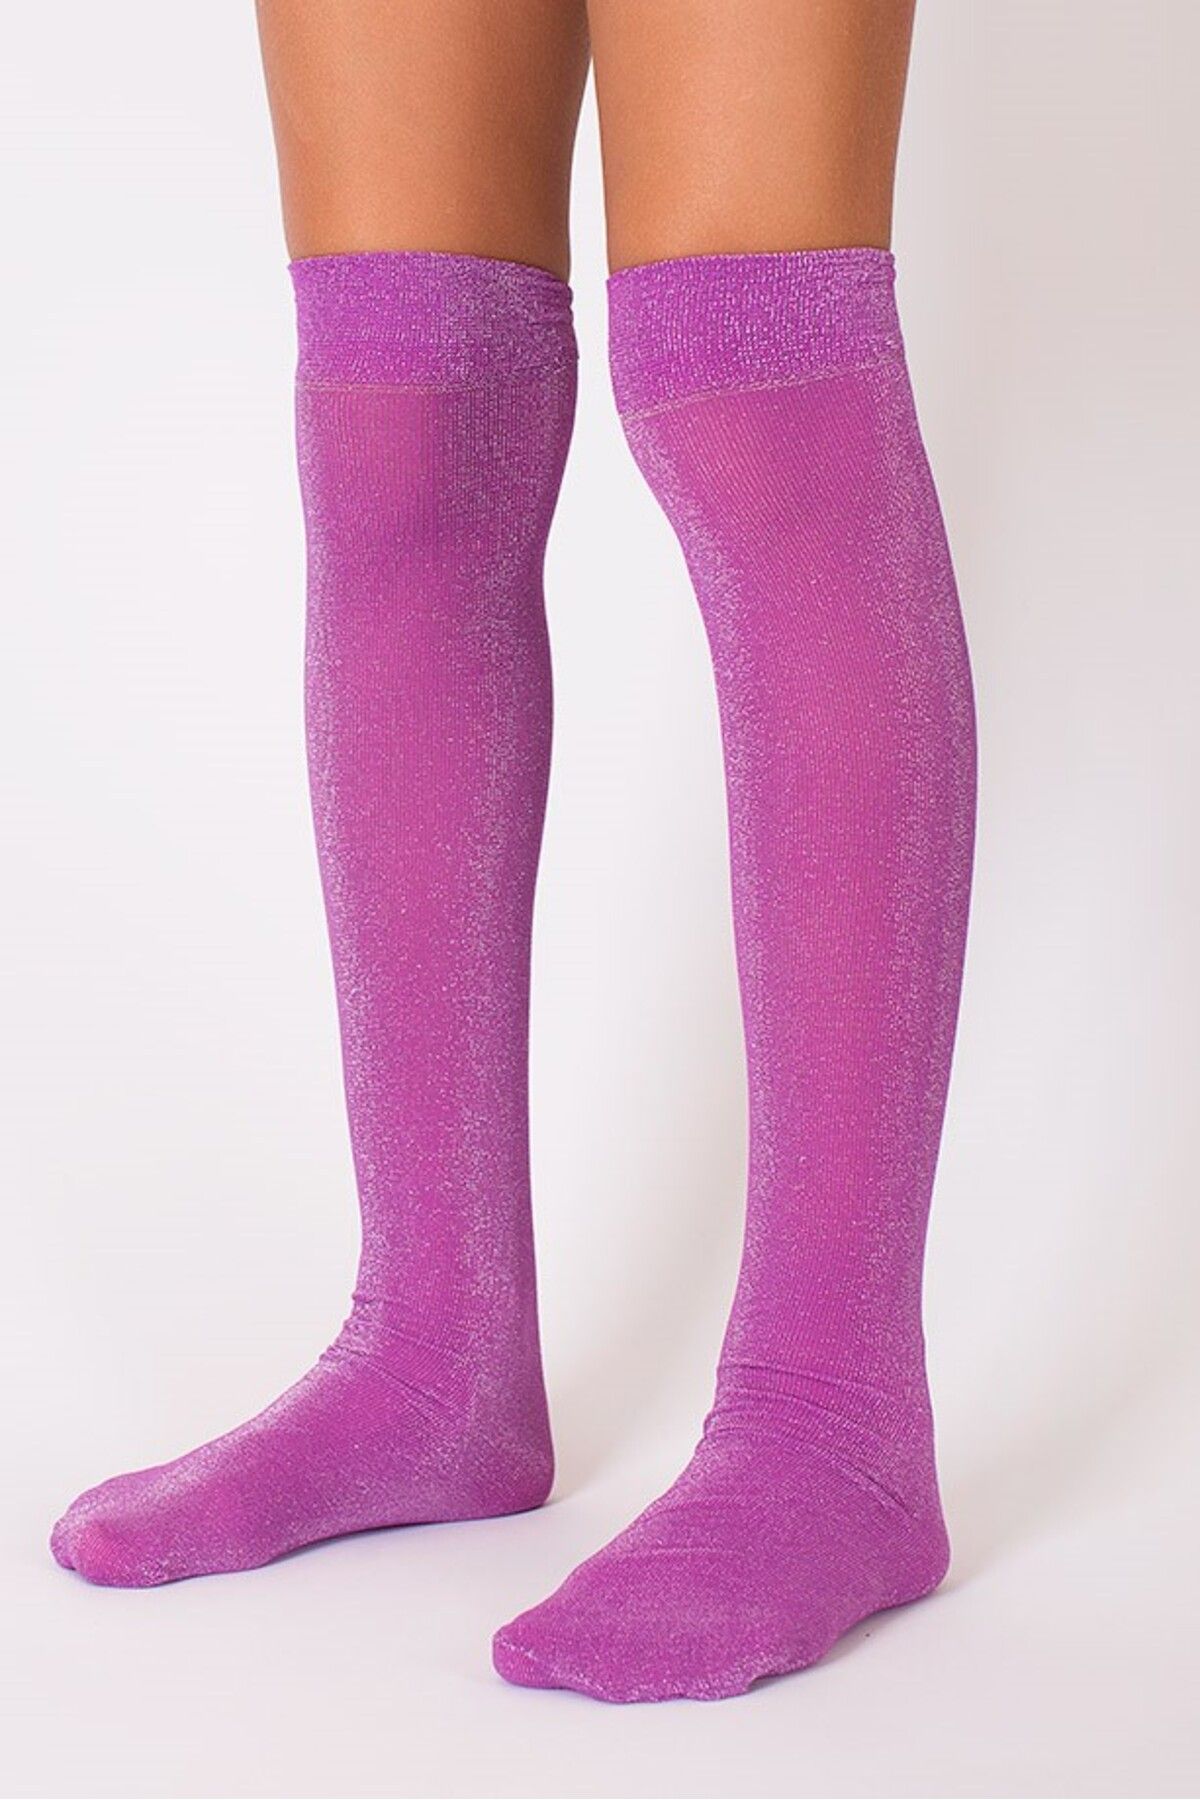 Goose Diz Altı Simli Işıltılı Mor Kız Çocuk Çorap